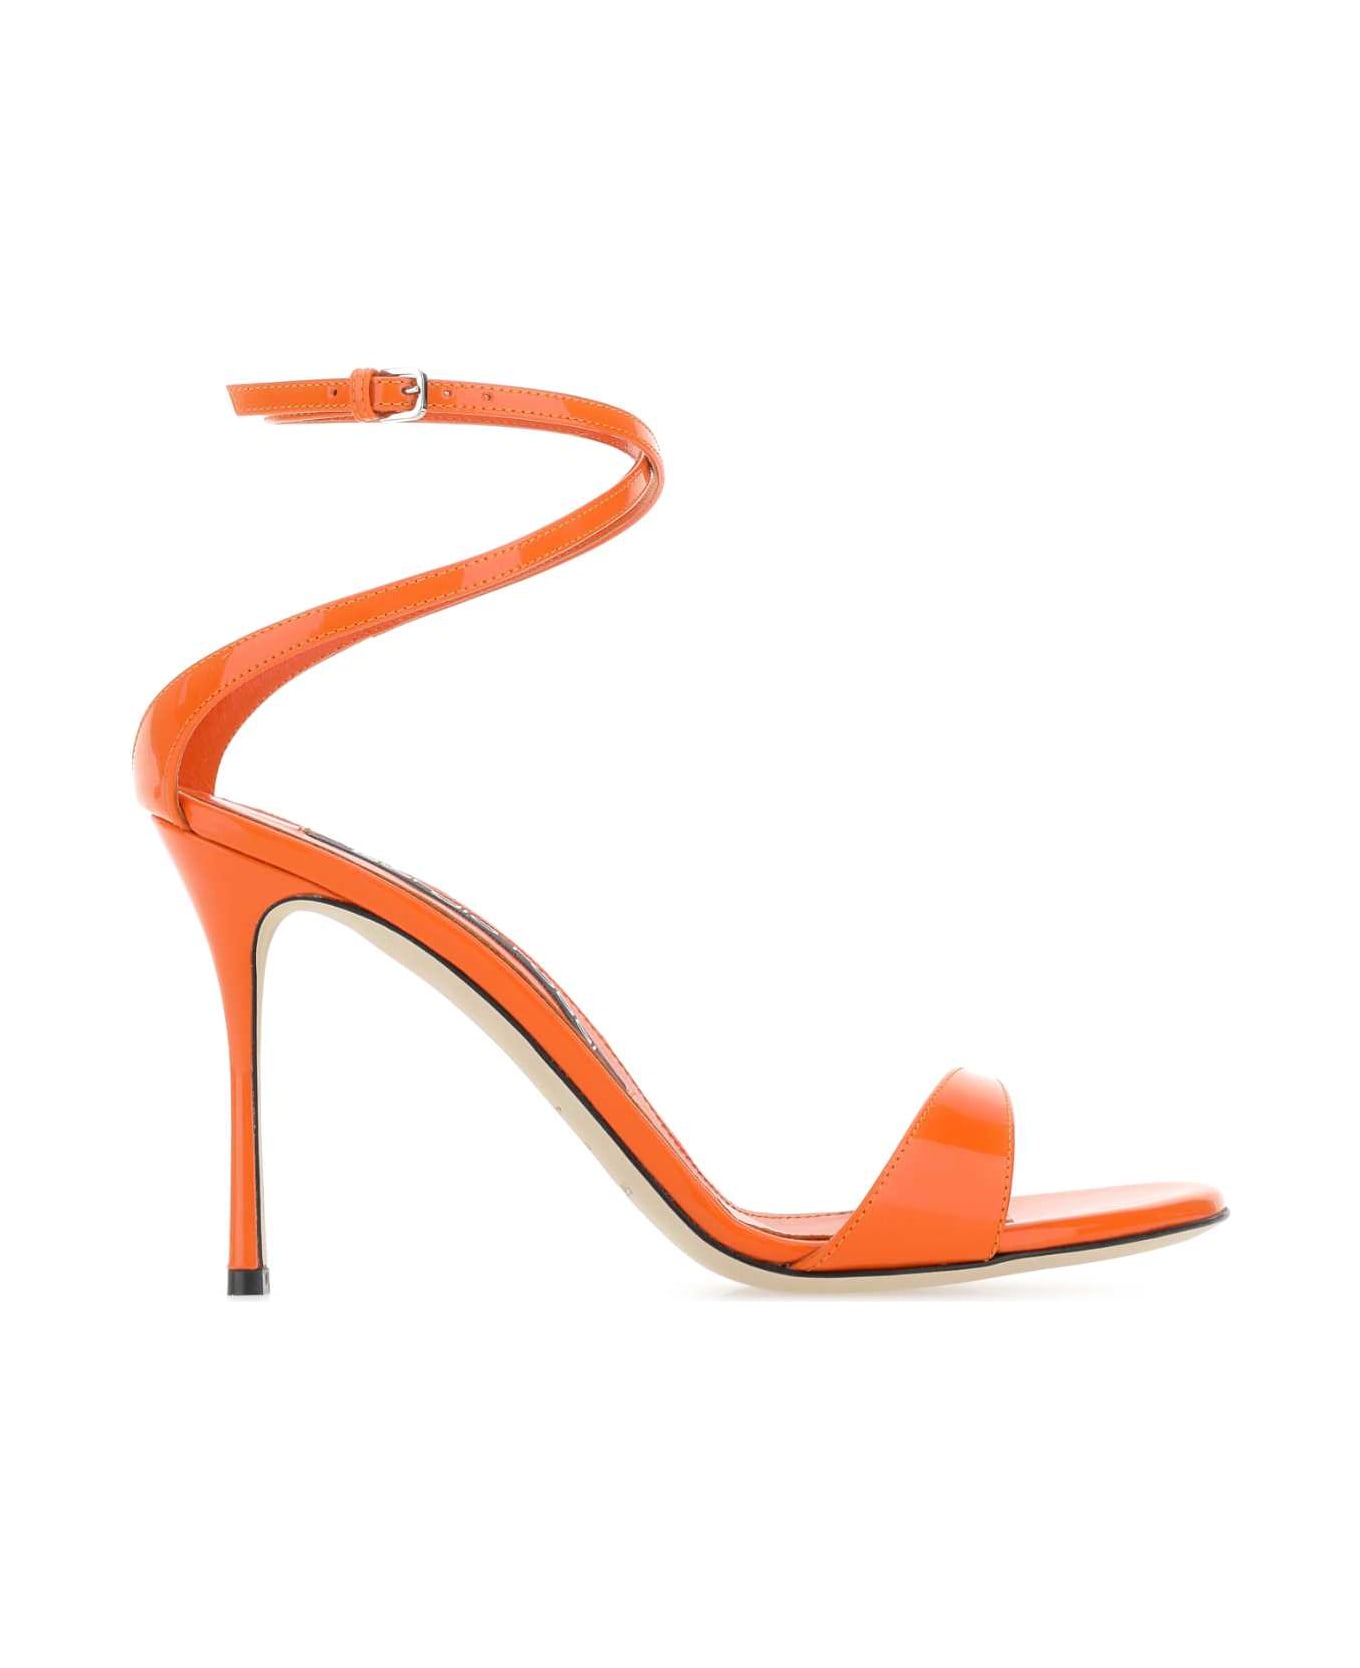 Sergio Rossi Orange Leather Godiva Sandals - Orange